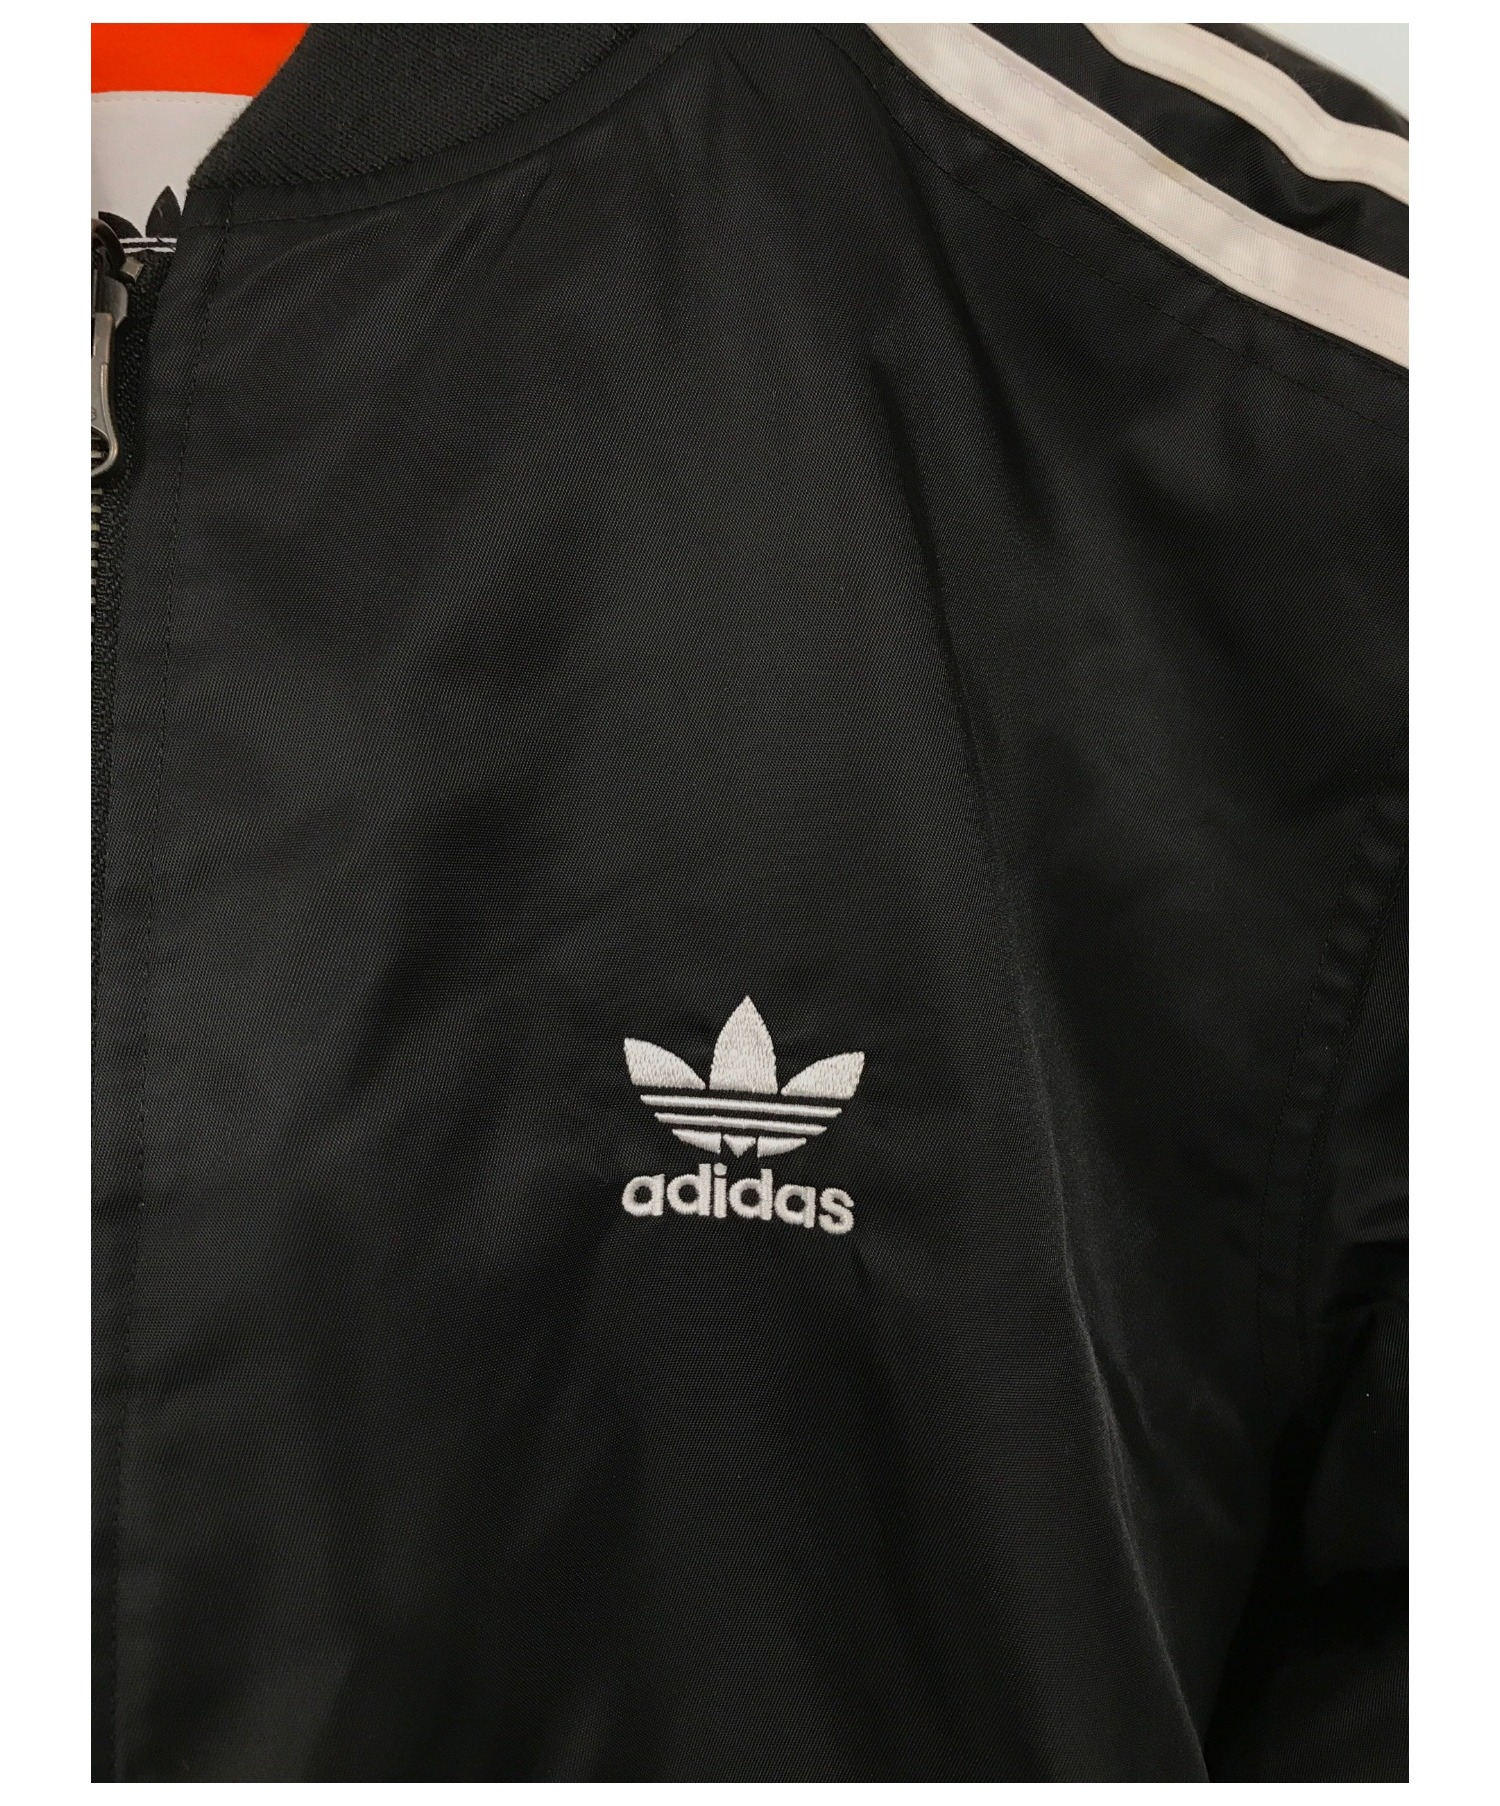 adidas (アディダス) ボンバージャケット ブラック サイズ:SIZE L